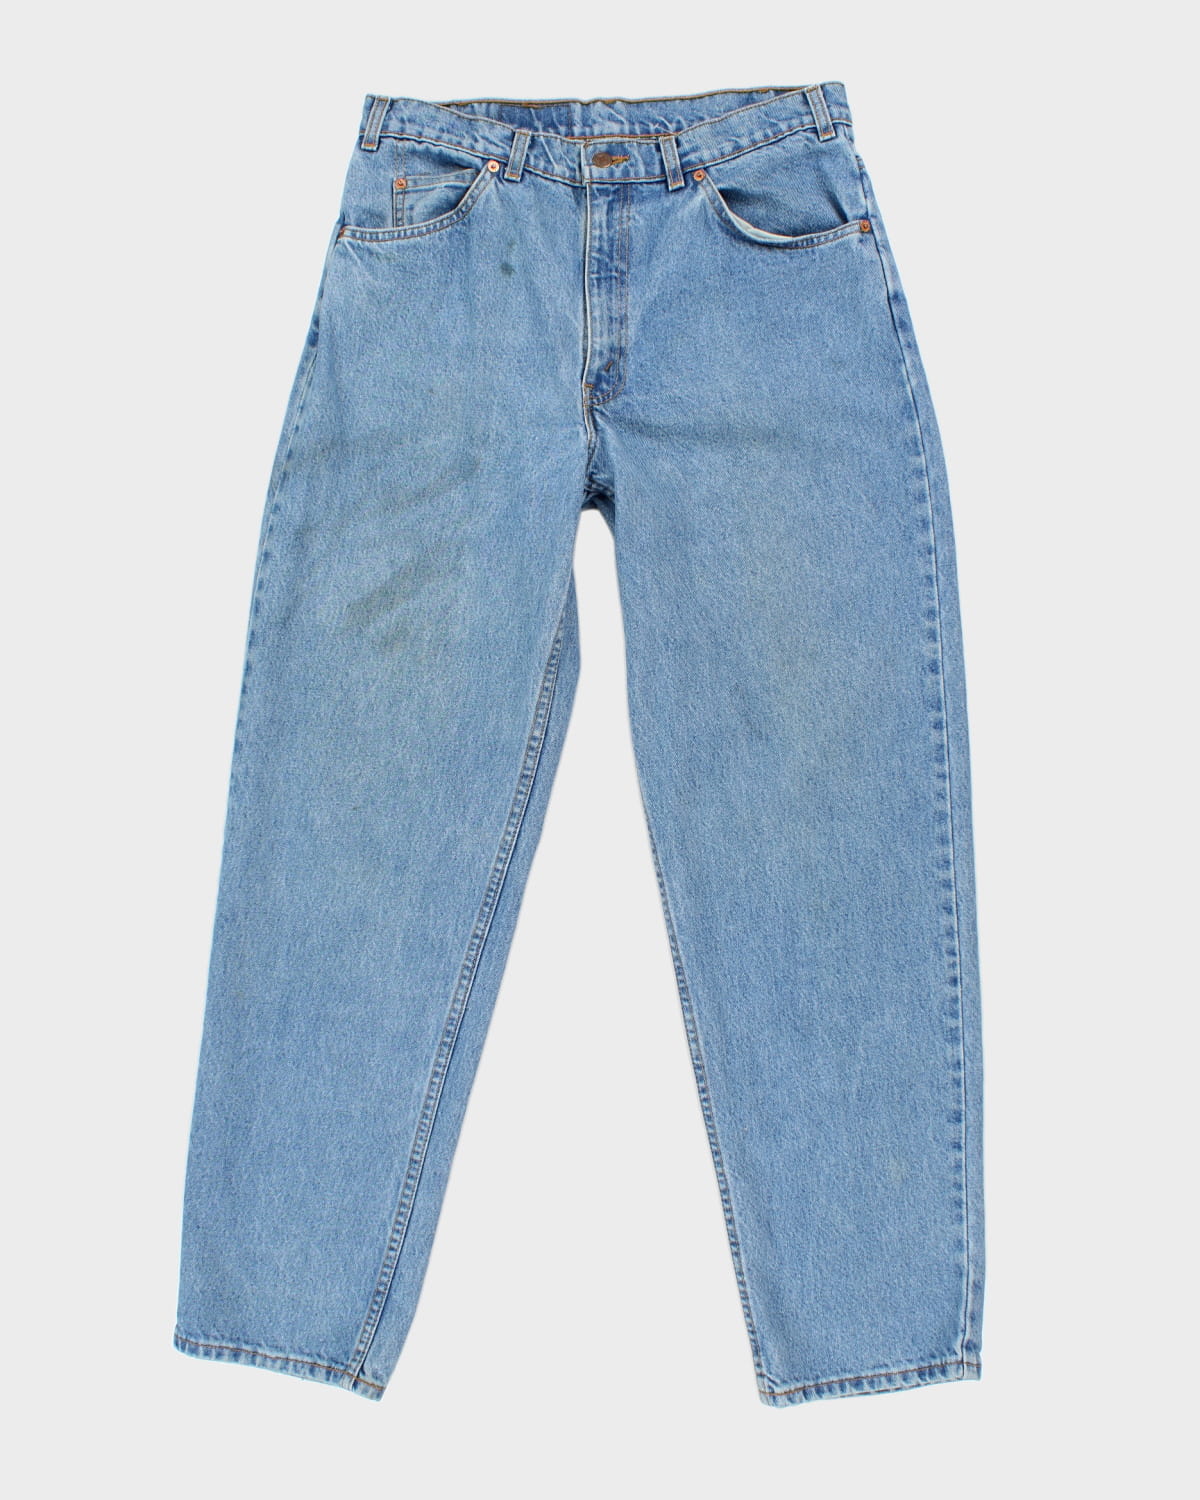 Levi's Orange Tab Blue Medium Wash Jeans - W34 L32